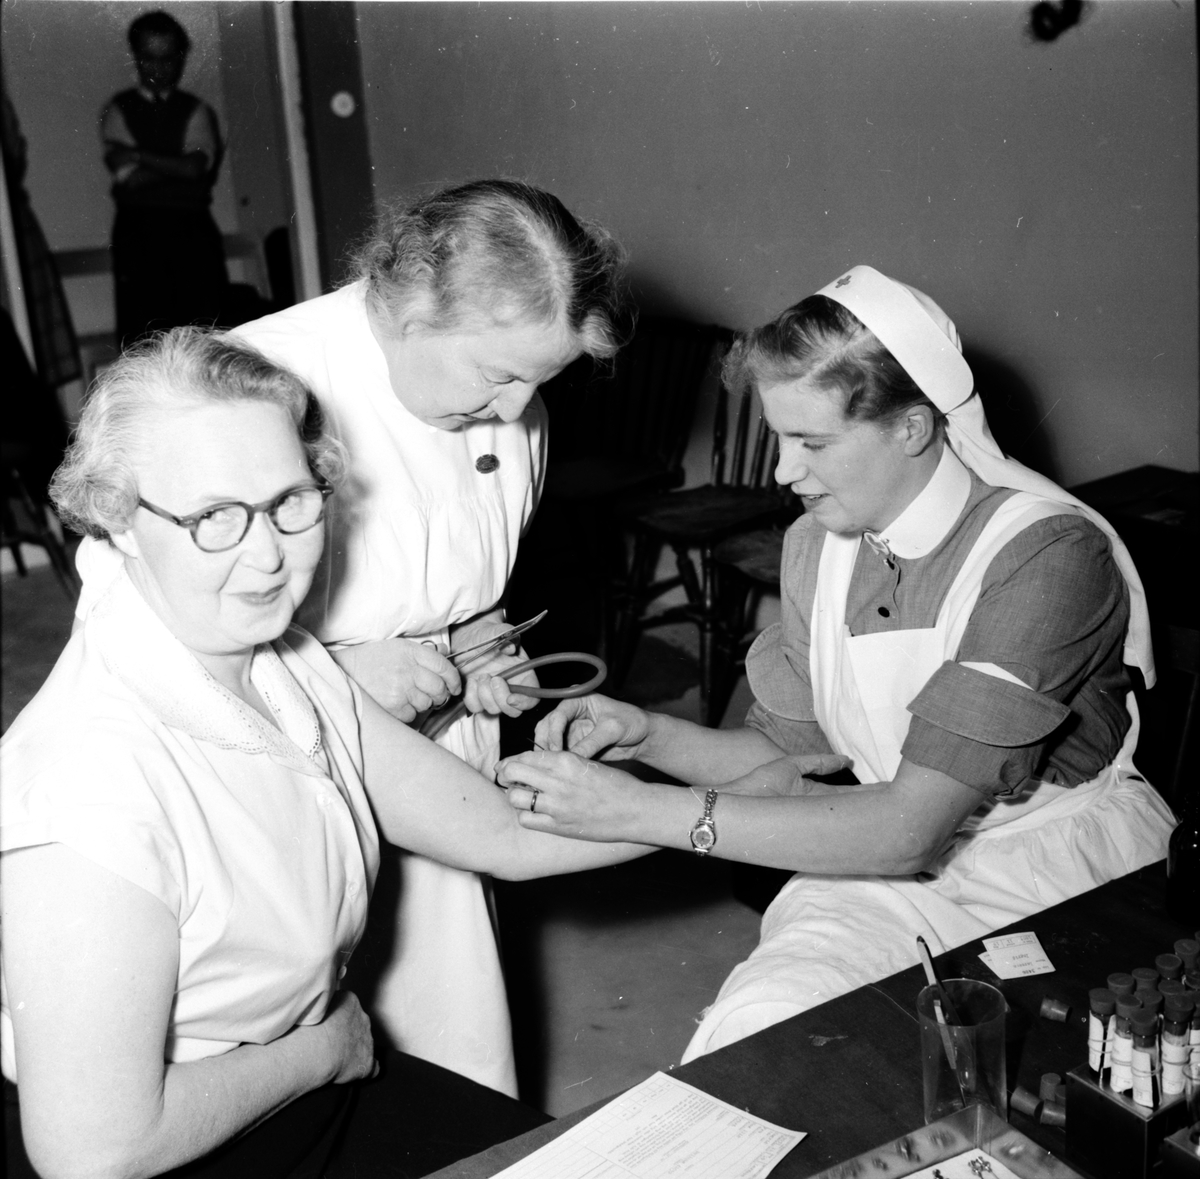 Arbrå,
Blodgivare, till vänster Ingrid Larsson.
Nov 1954